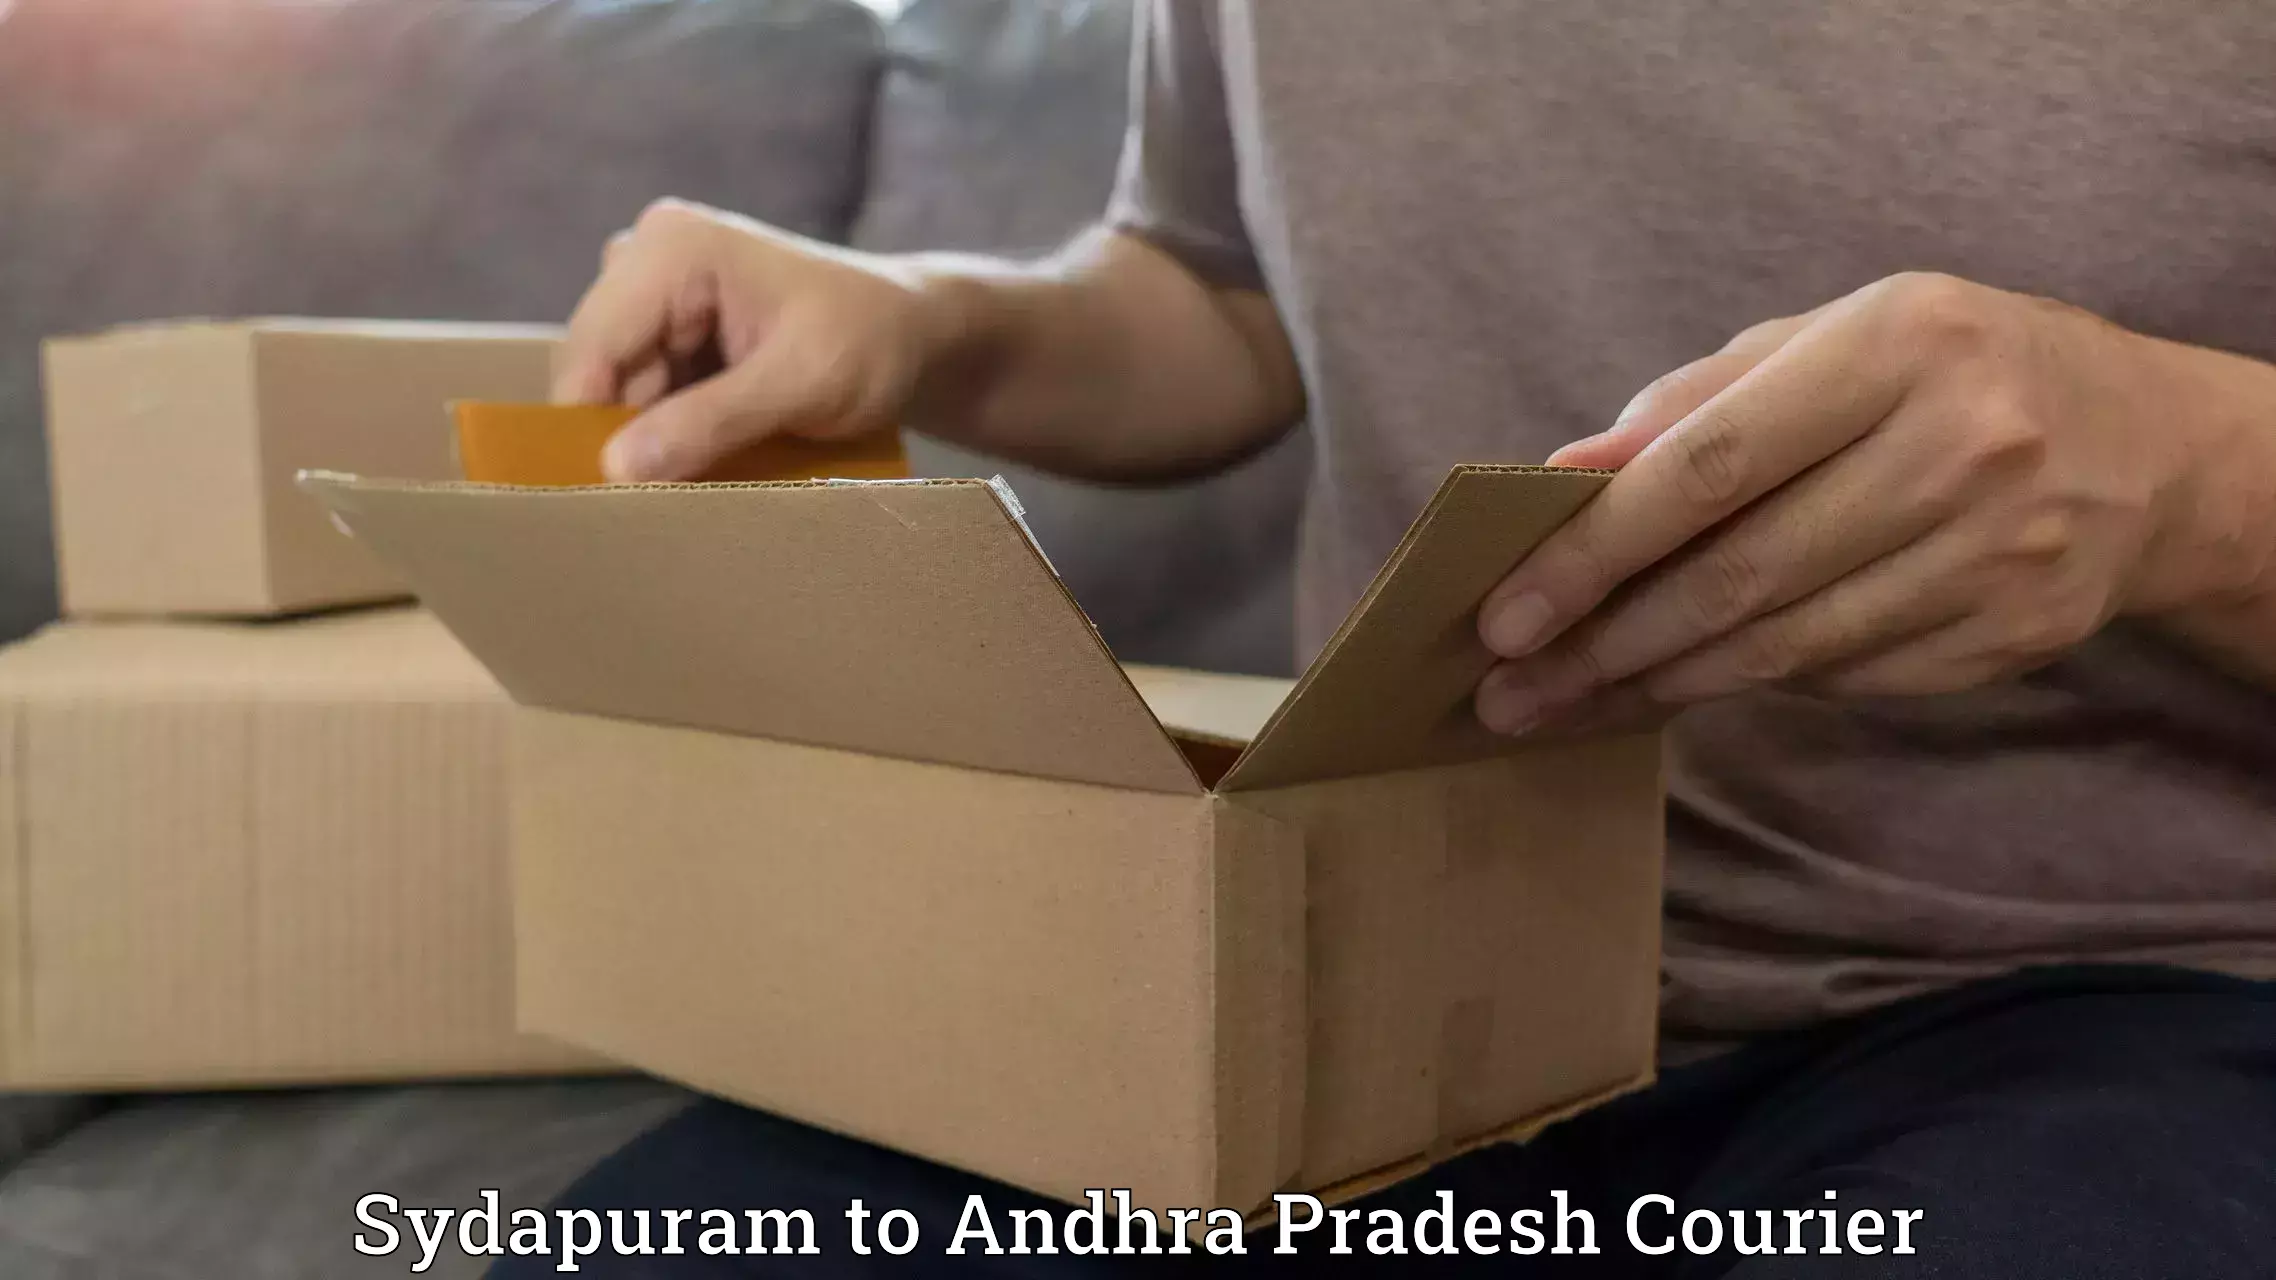 Easy return solutions Sydapuram to Pedapadu